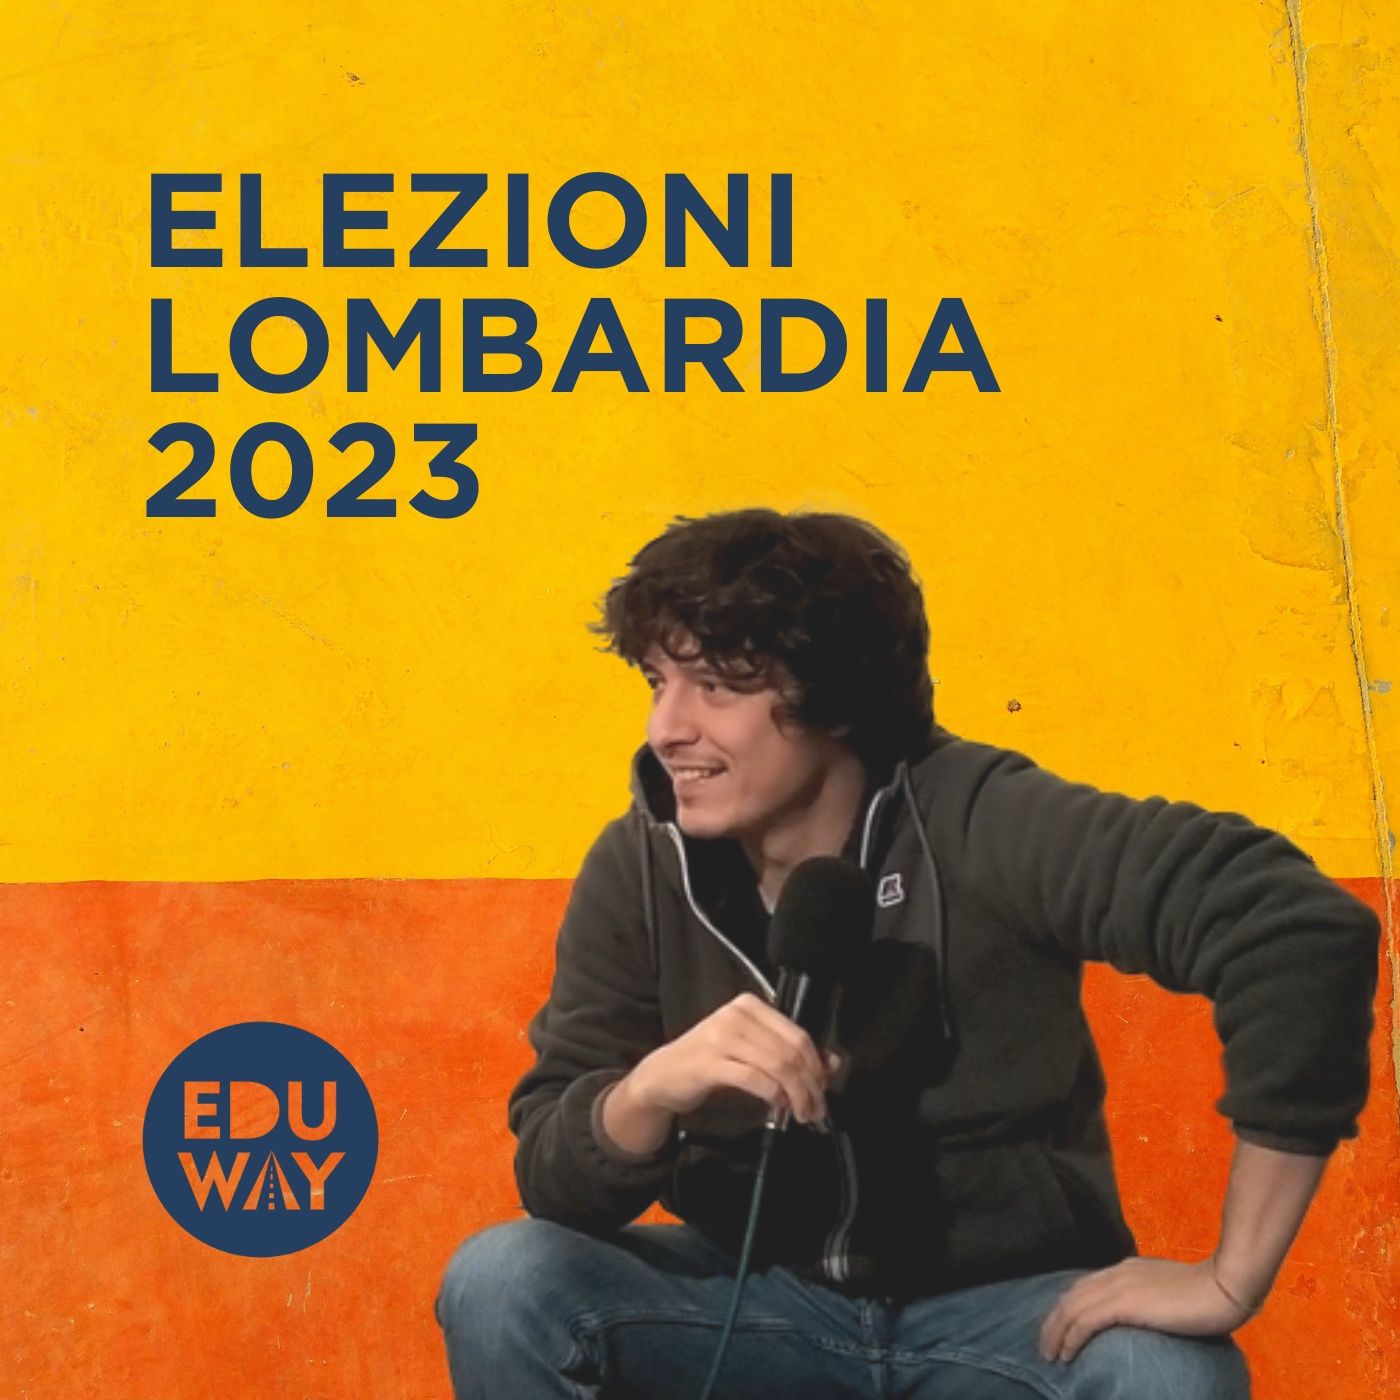 Elezioni Lombardia 2023